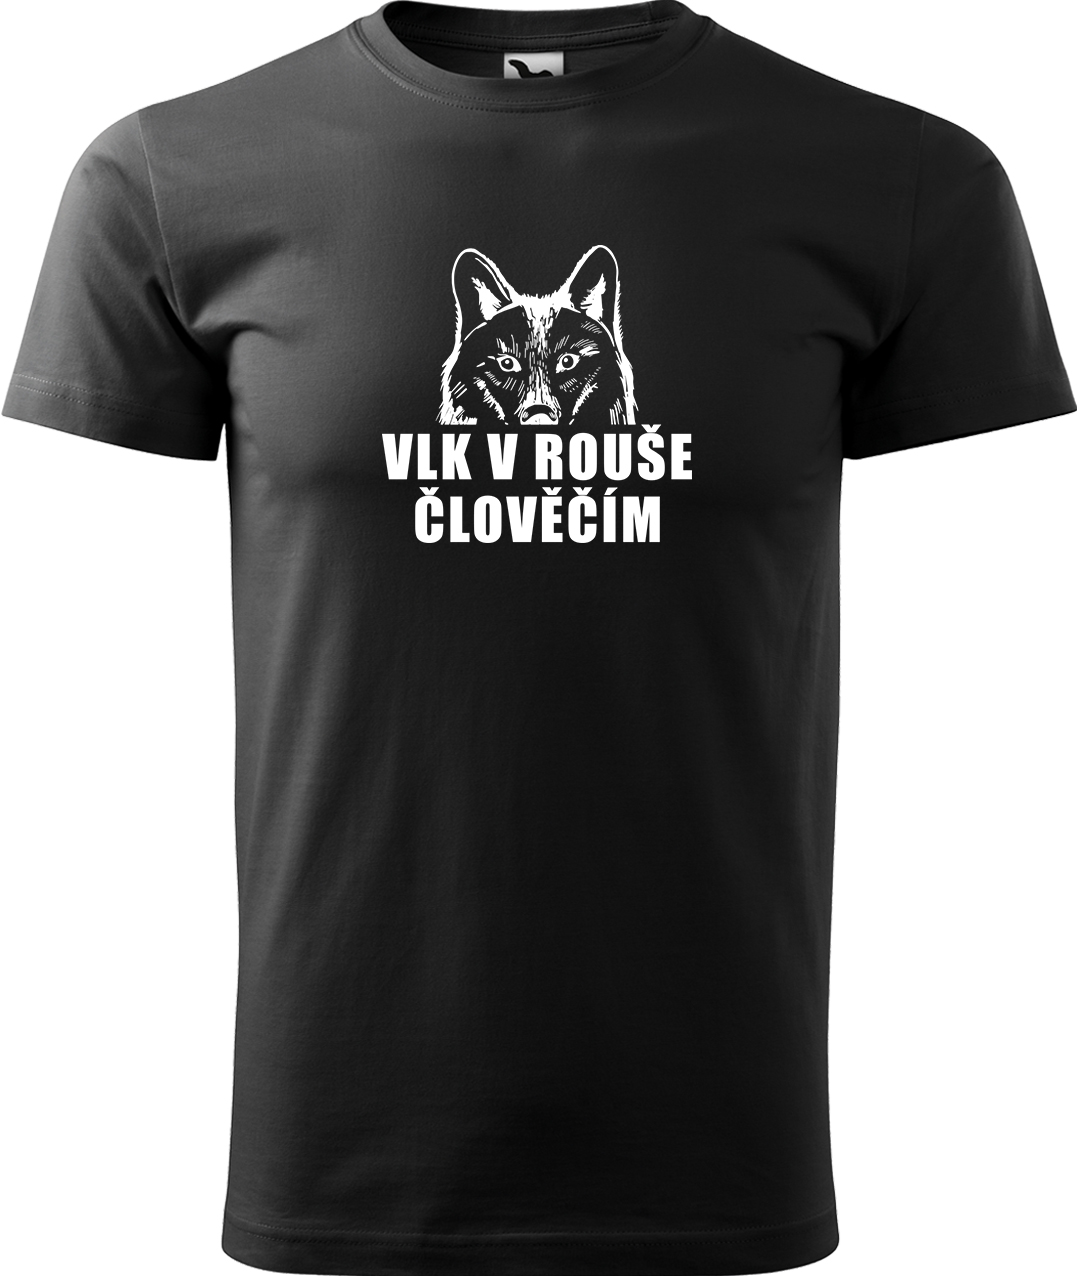 Pánské tričko s vlkem - Vlk v rouše člověčím Velikost: M, Barva: Černá (01), Střih: pánský